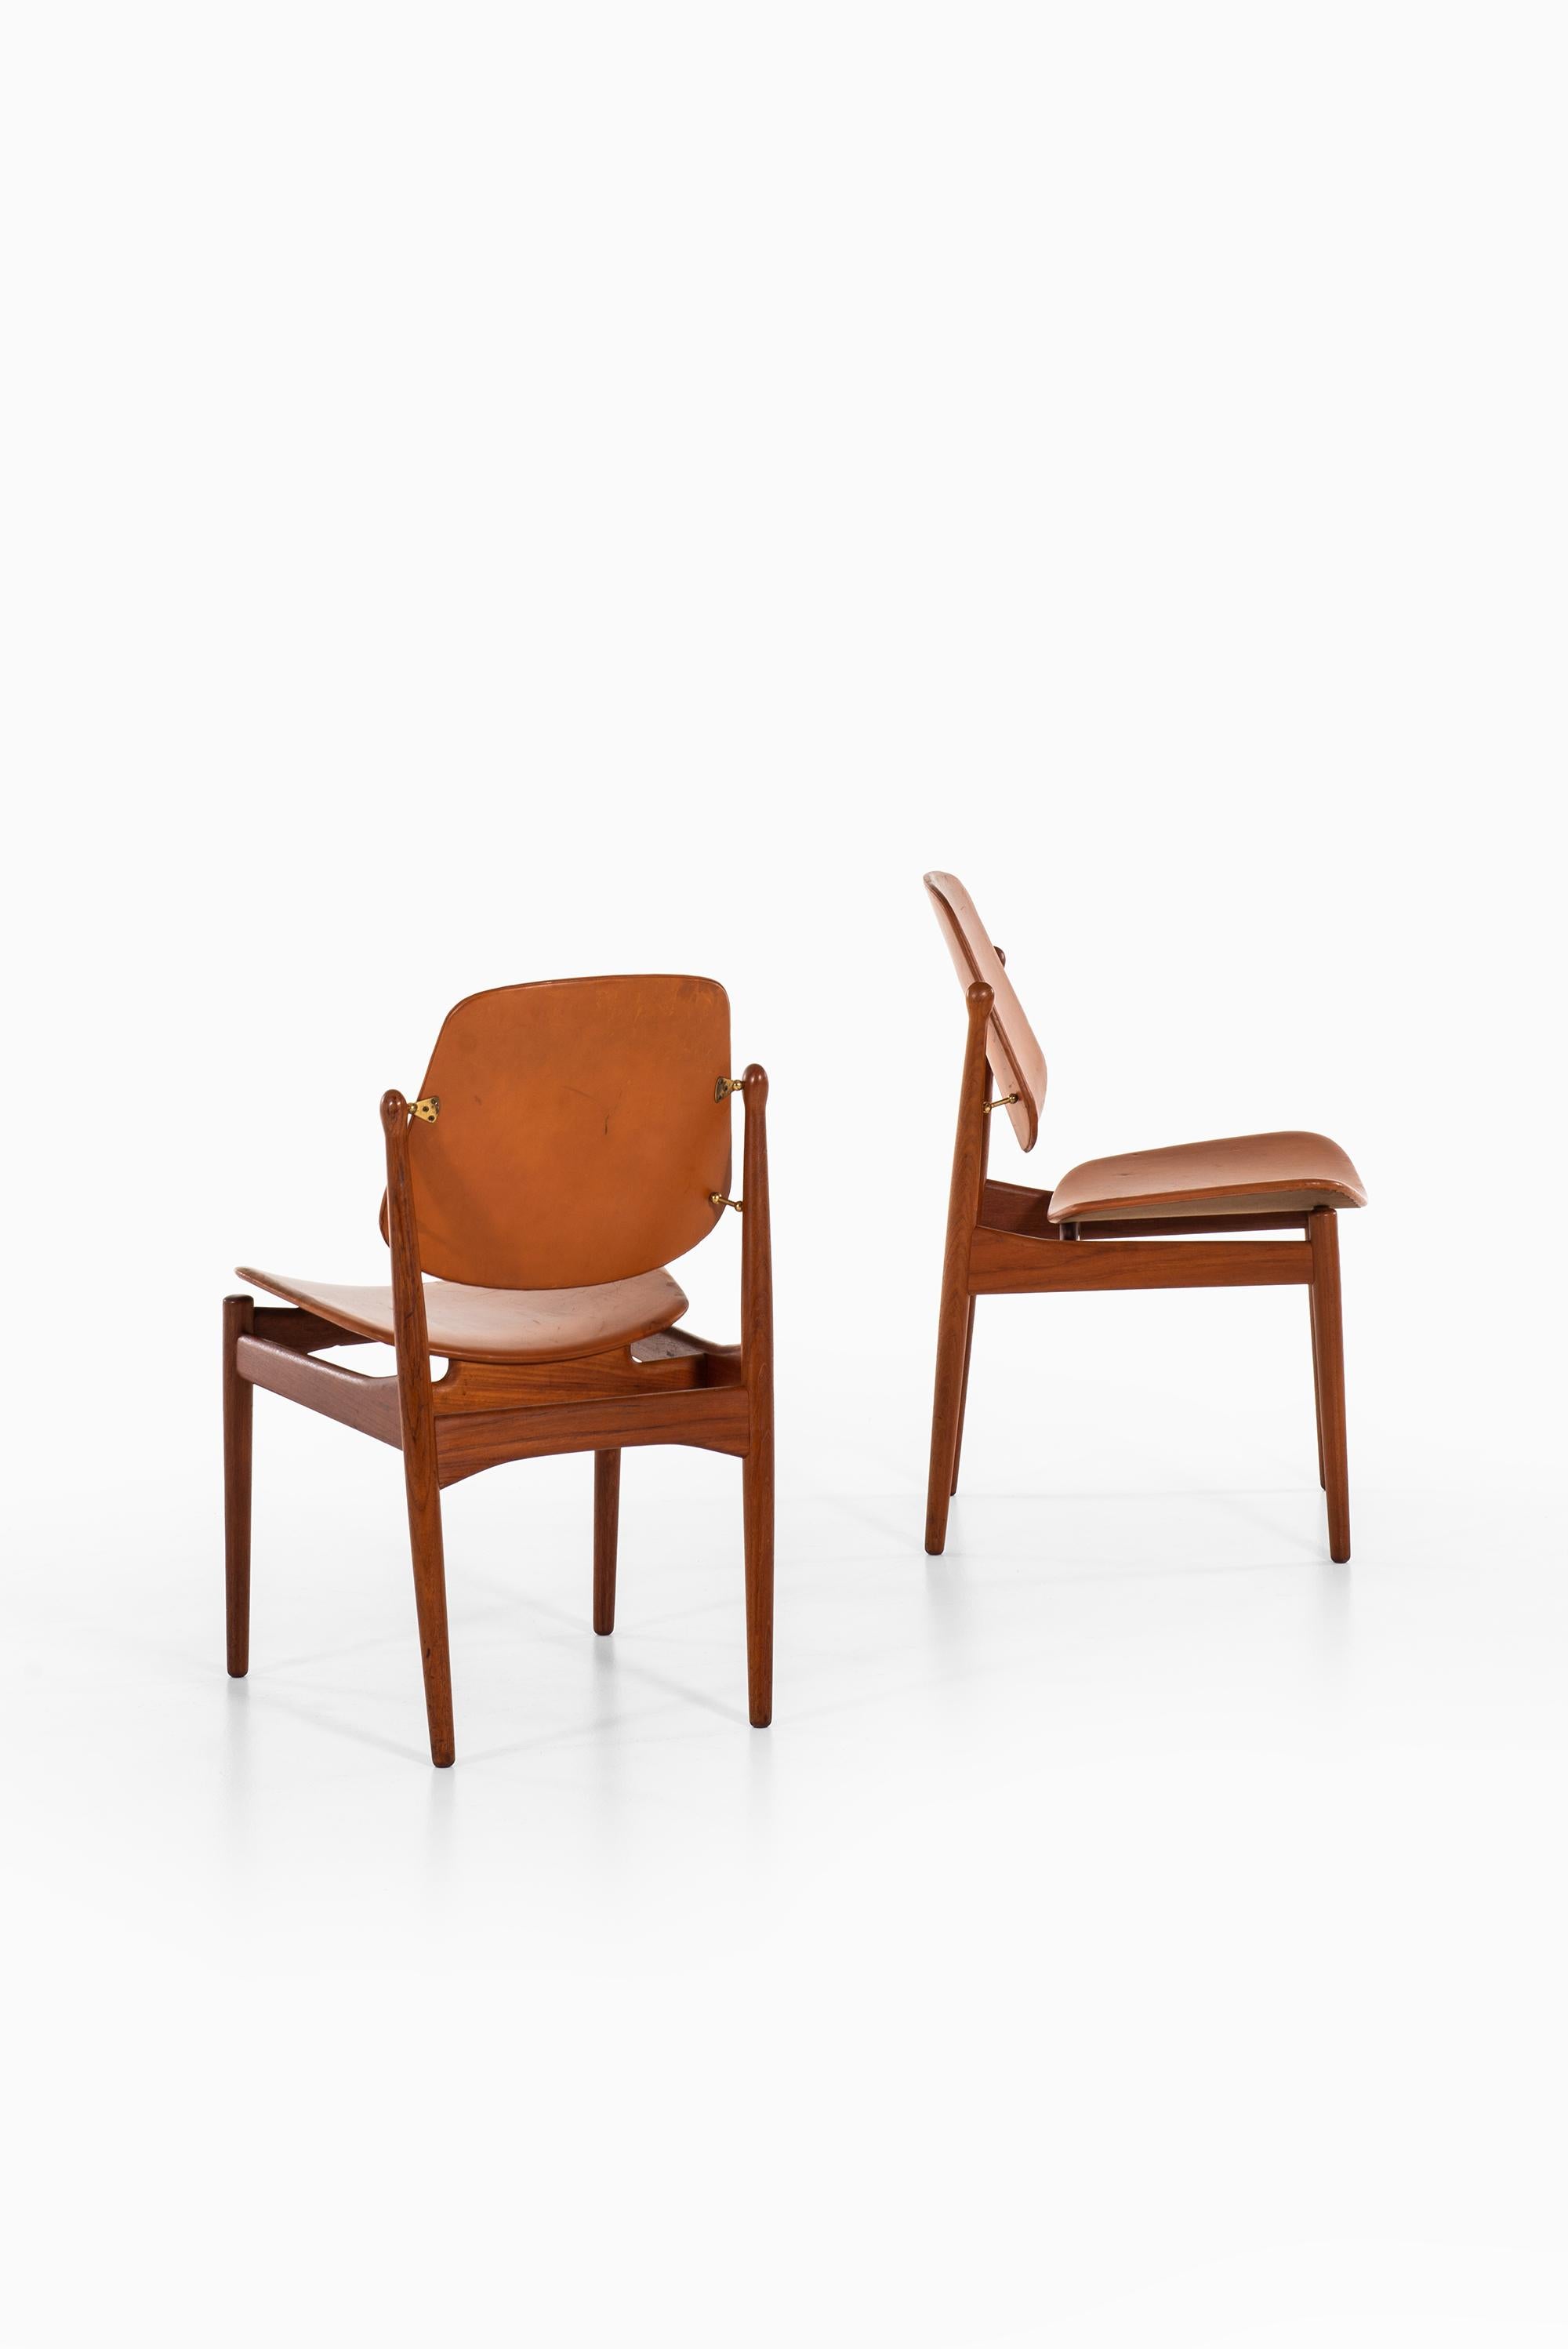 Scandinavian Modern Arne Vodder Dining Chairs Model 203 by France & Daverkosen in Denmark For Sale